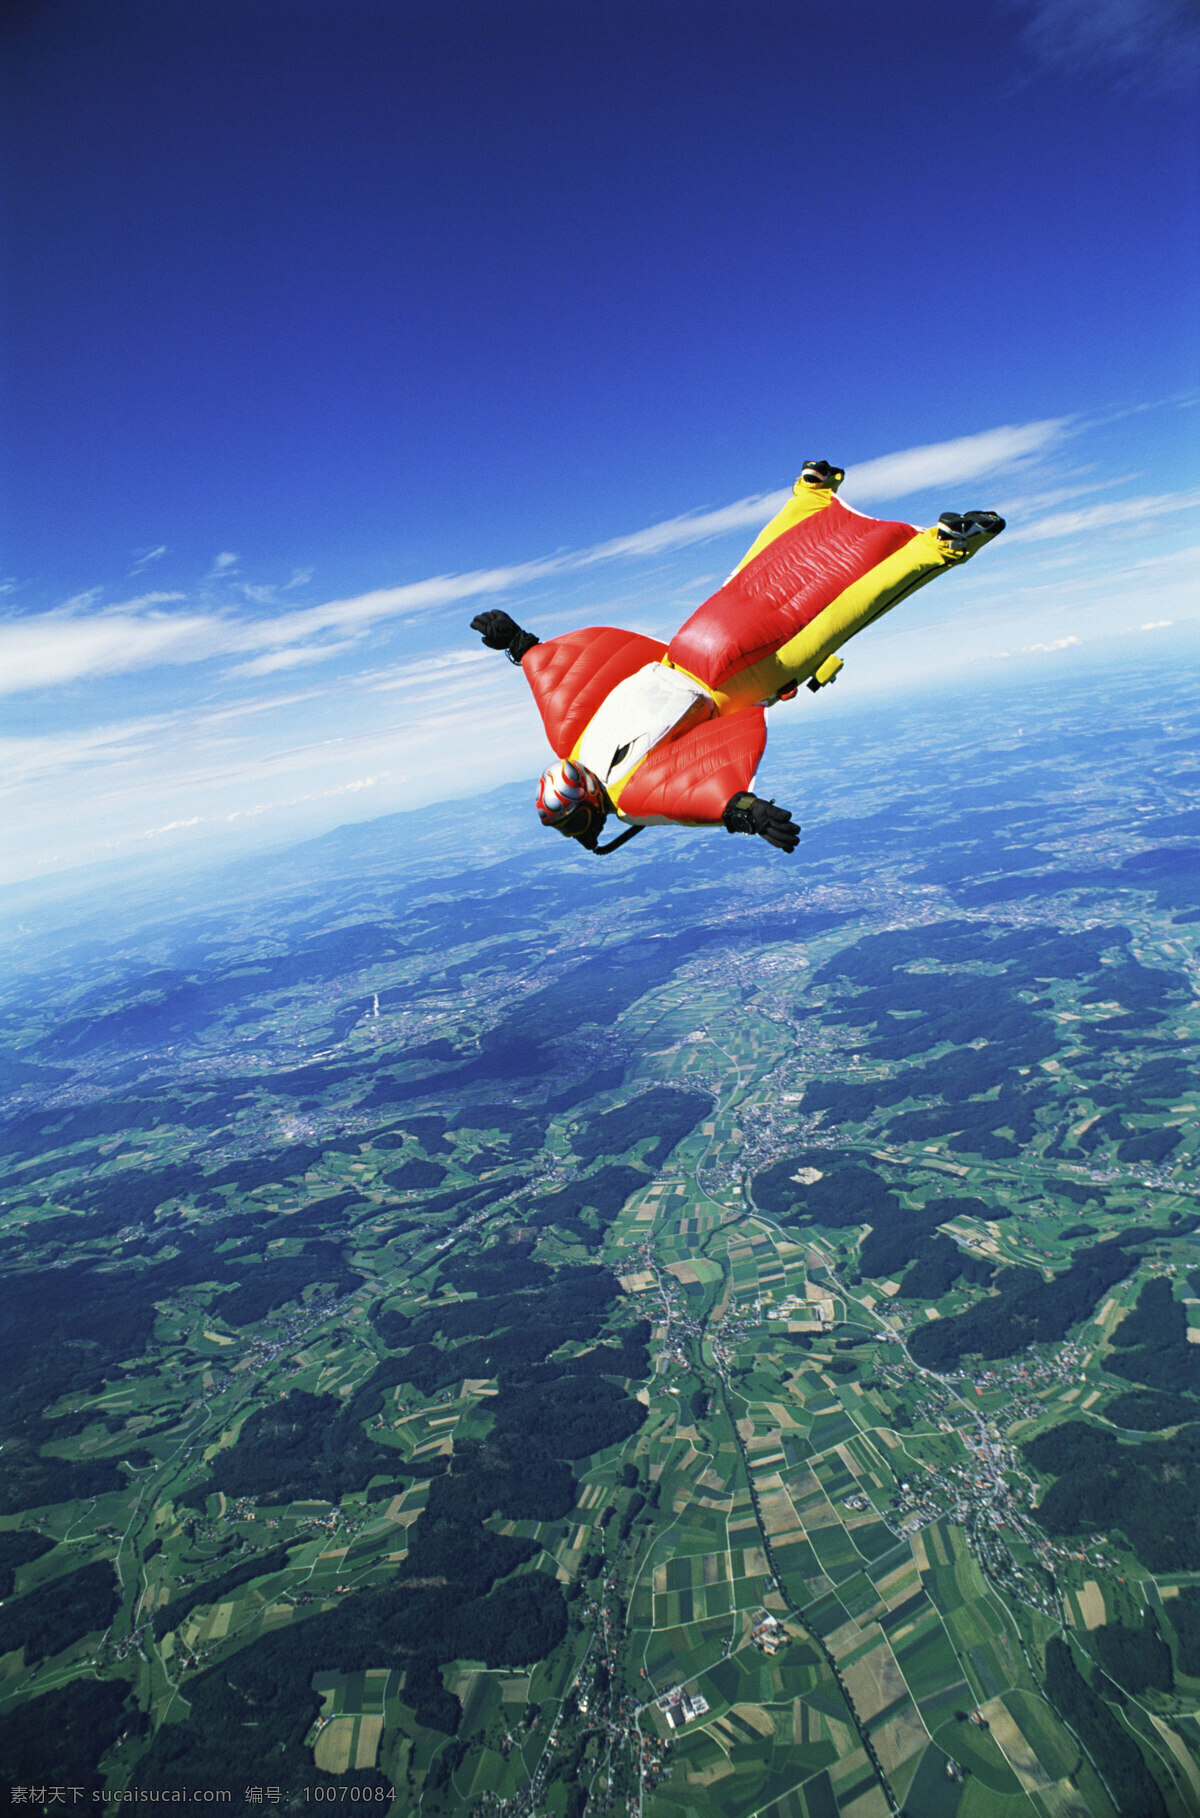 高空飞翔 飞人 蝙蝠人 跳伞 高空跳伞 飞行员 极限运动 挑战极限 冒险 团队 协作 合作 远山 山脉 体育运动 文化艺术